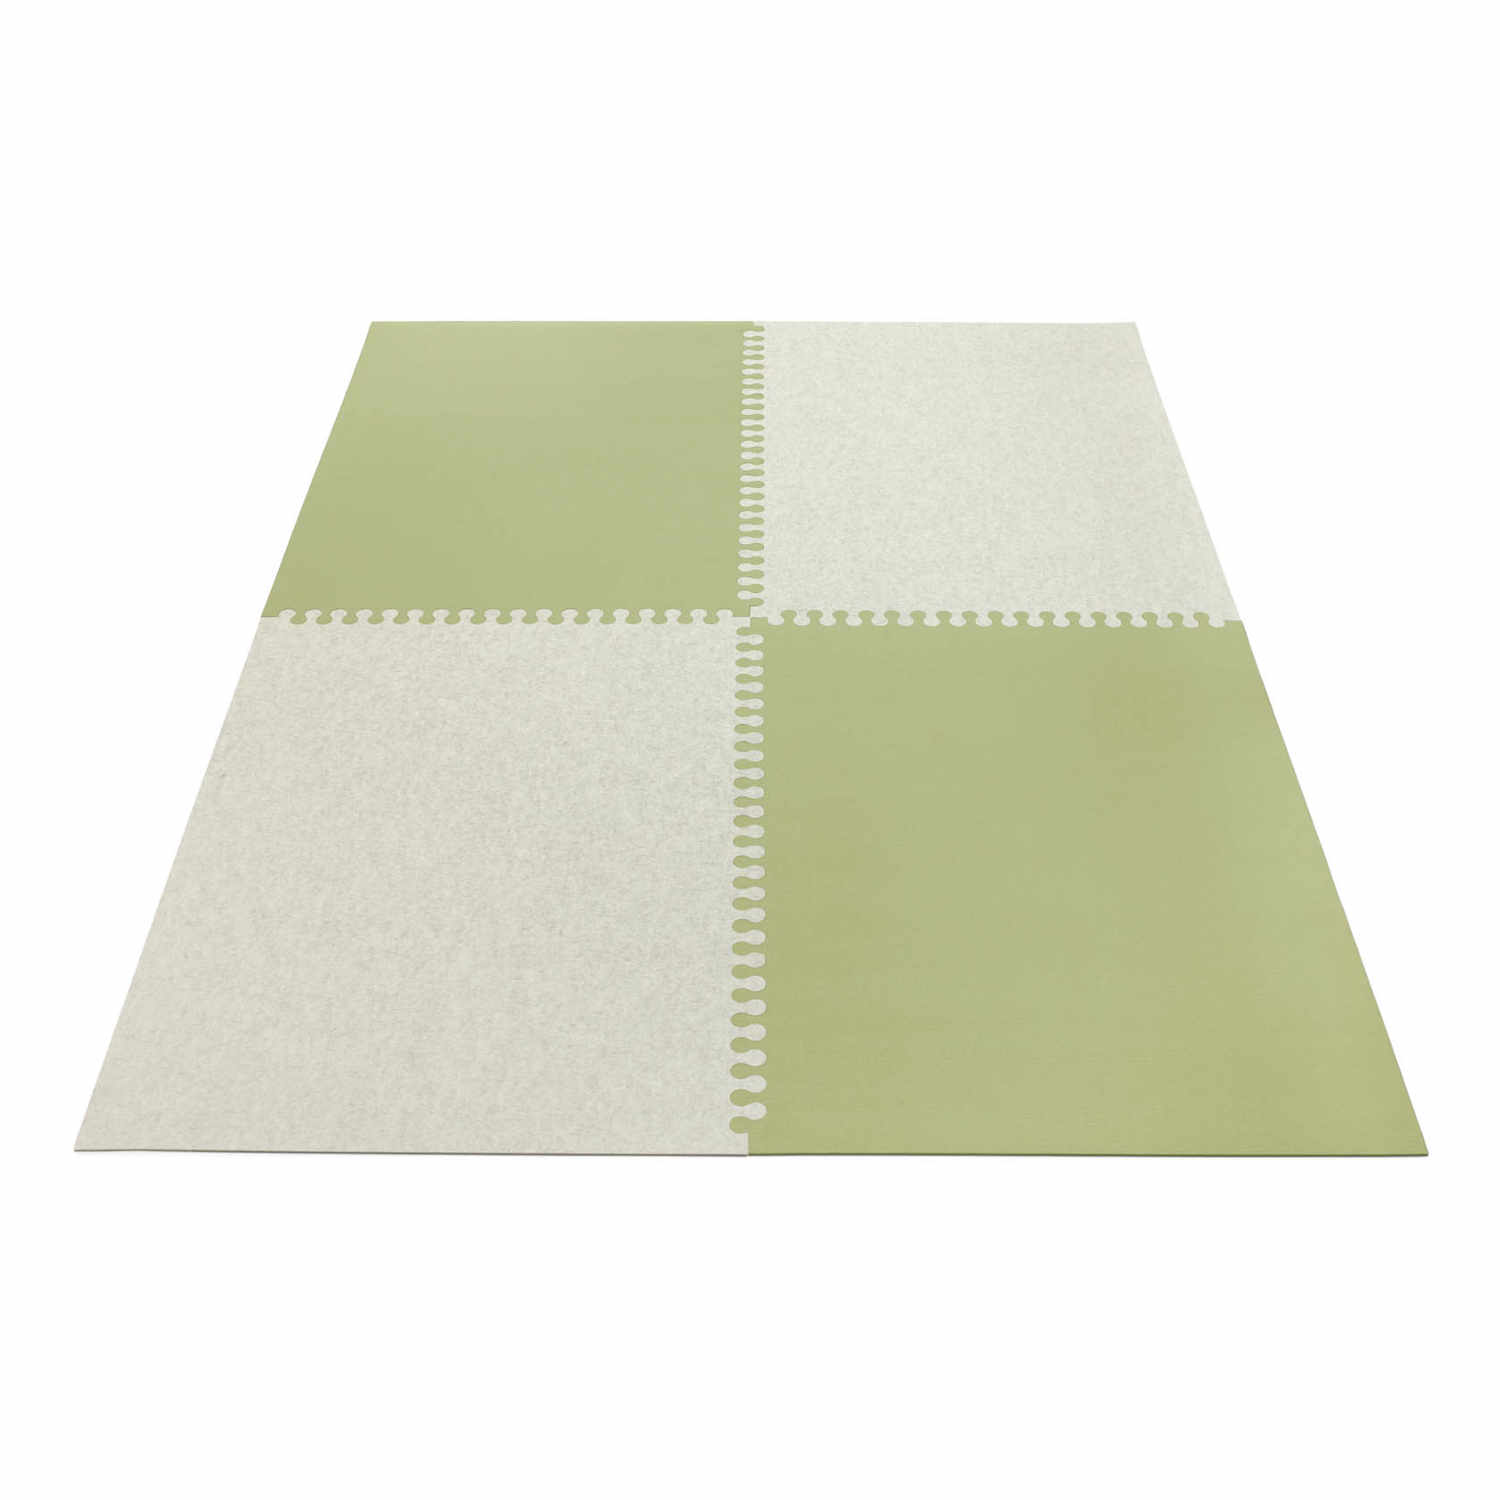 Zipp rechteckig 4-teilig Teppich , Farbe anthrazit, Farbe 2 mohnrot 55, Grösse 140 x 200 cm von HEY-SIGN